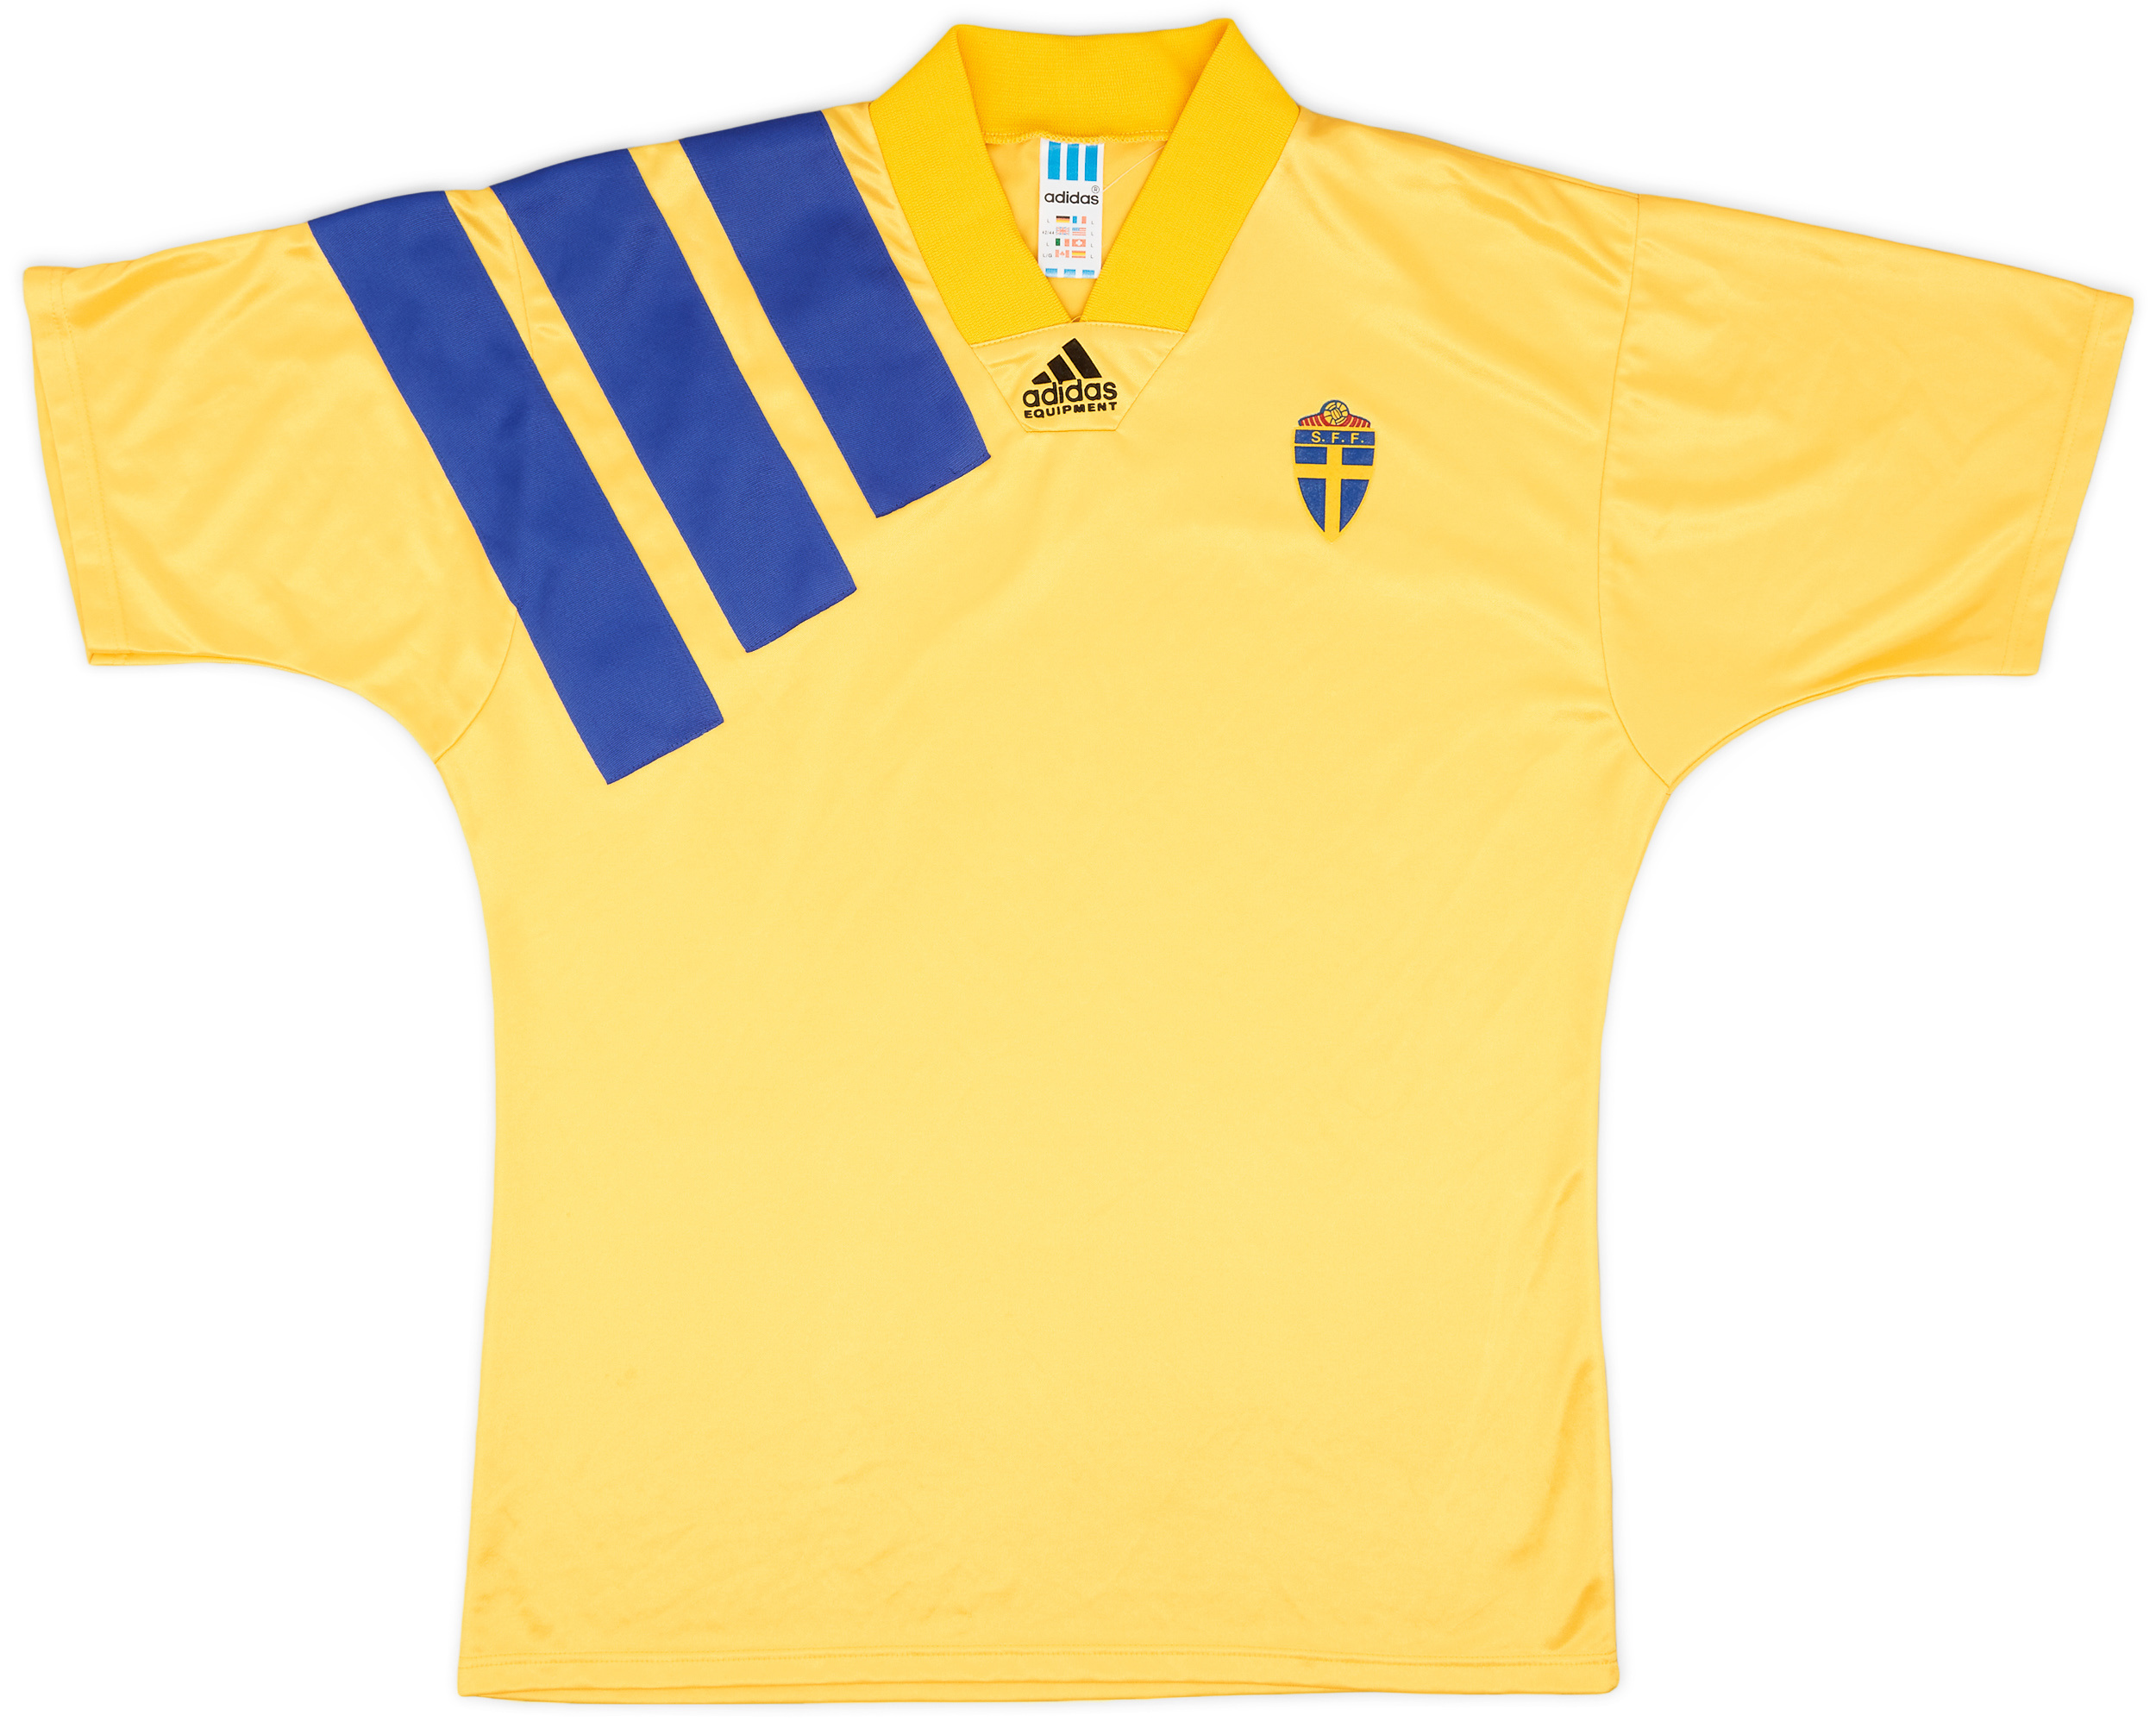 1992-94 Sweden Home Shirt - 9/10 - ()